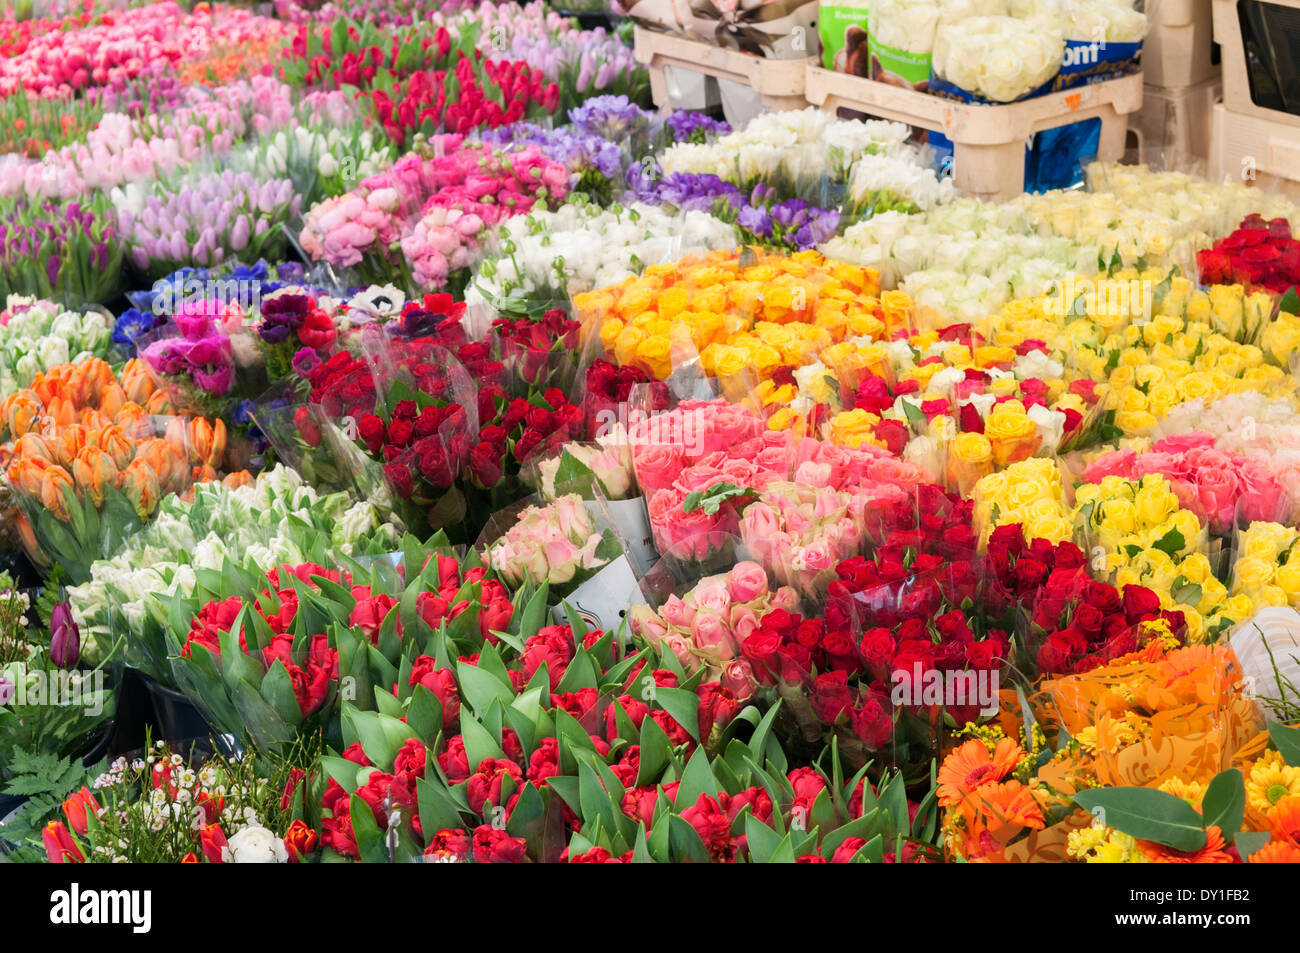 Hotorget fieno Mercato di fiori in vendita Foto Stock